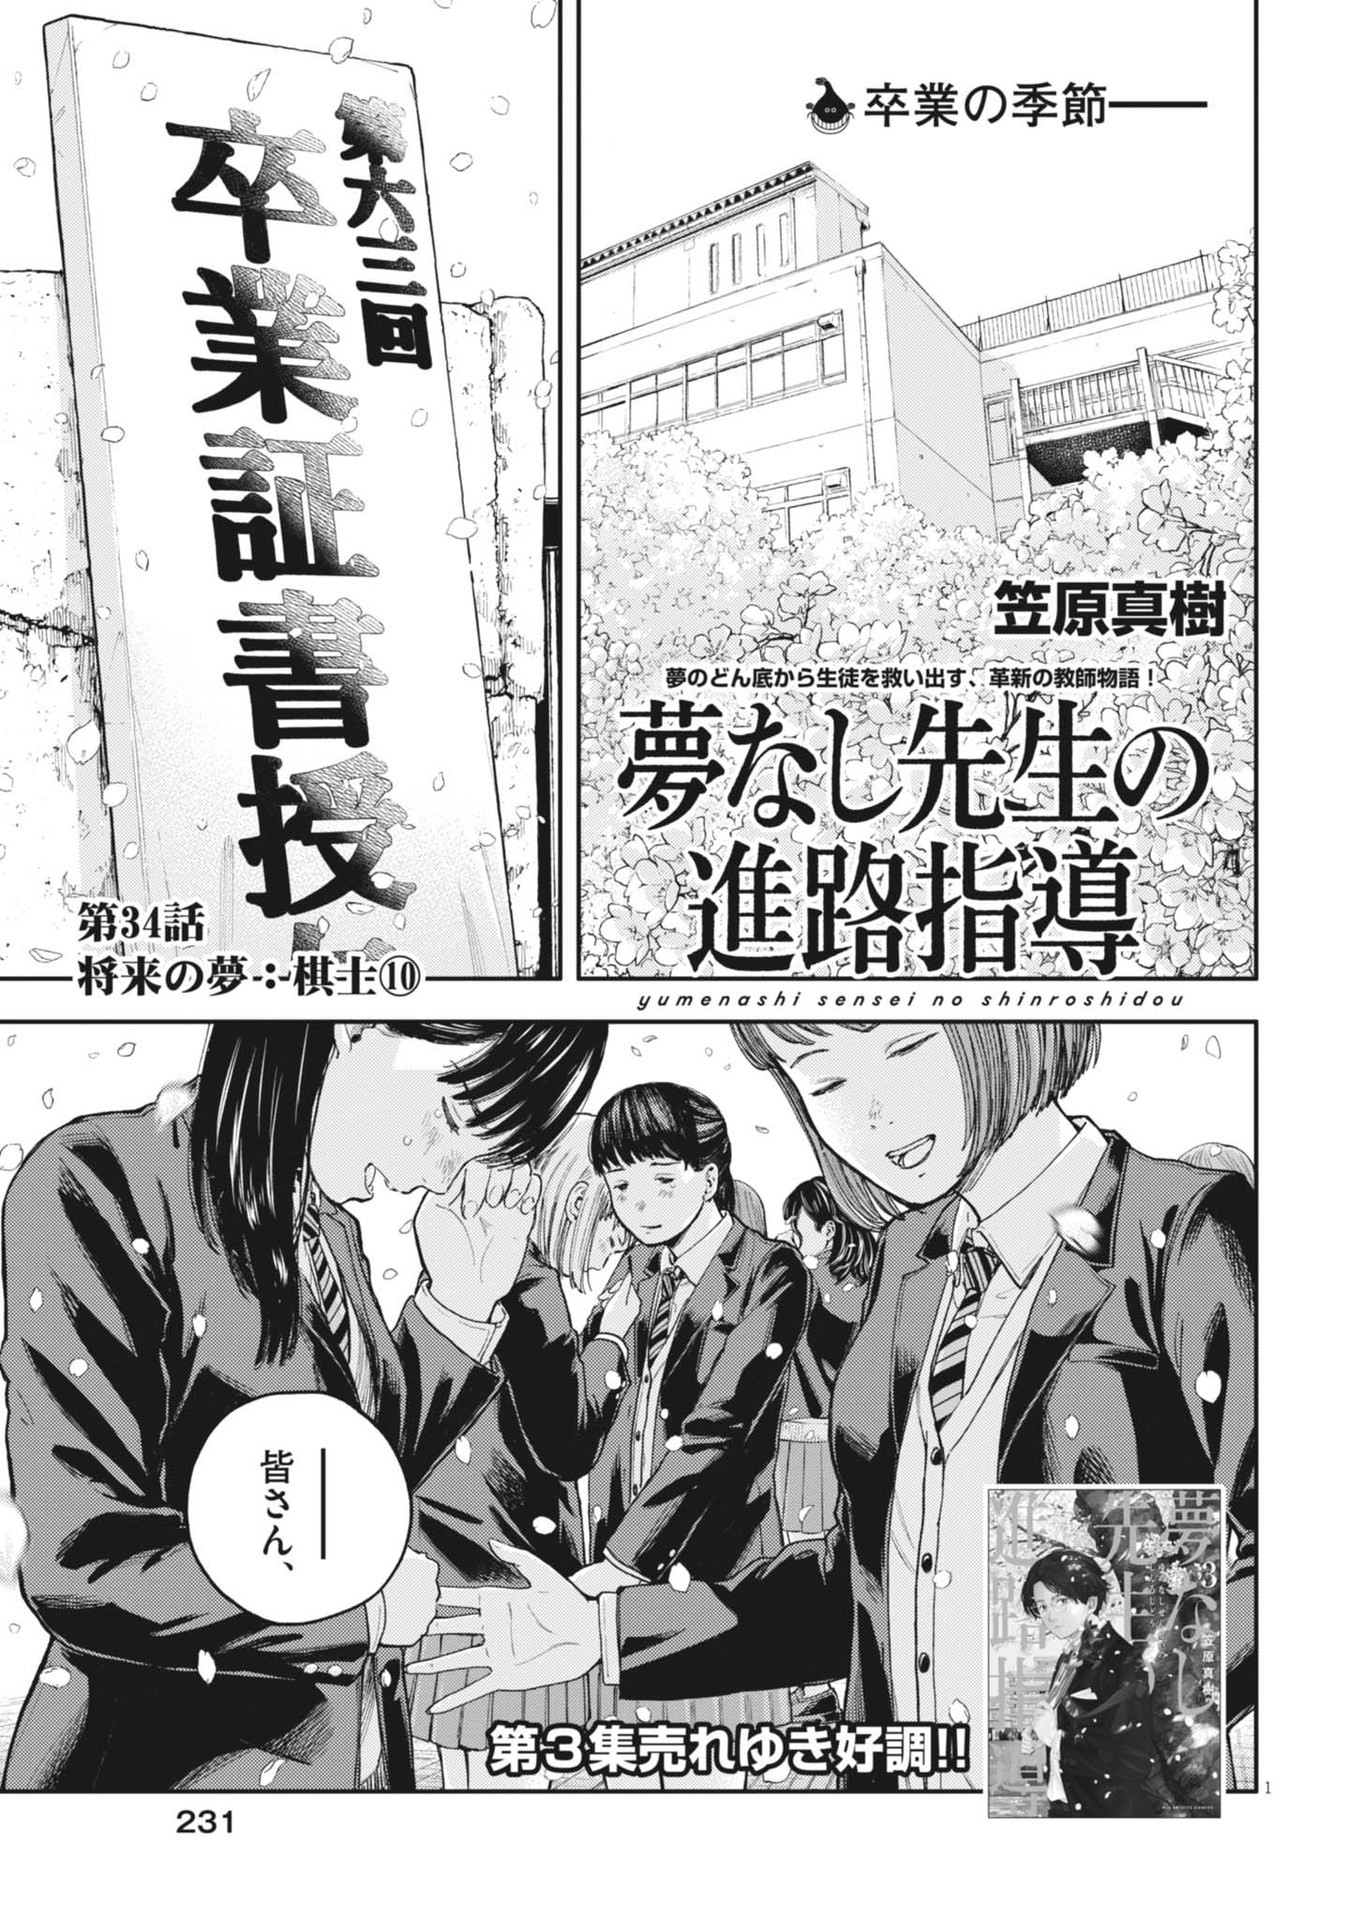 Yumenashi-sensei no Shinroshidou - Chapter 34 - Page 1